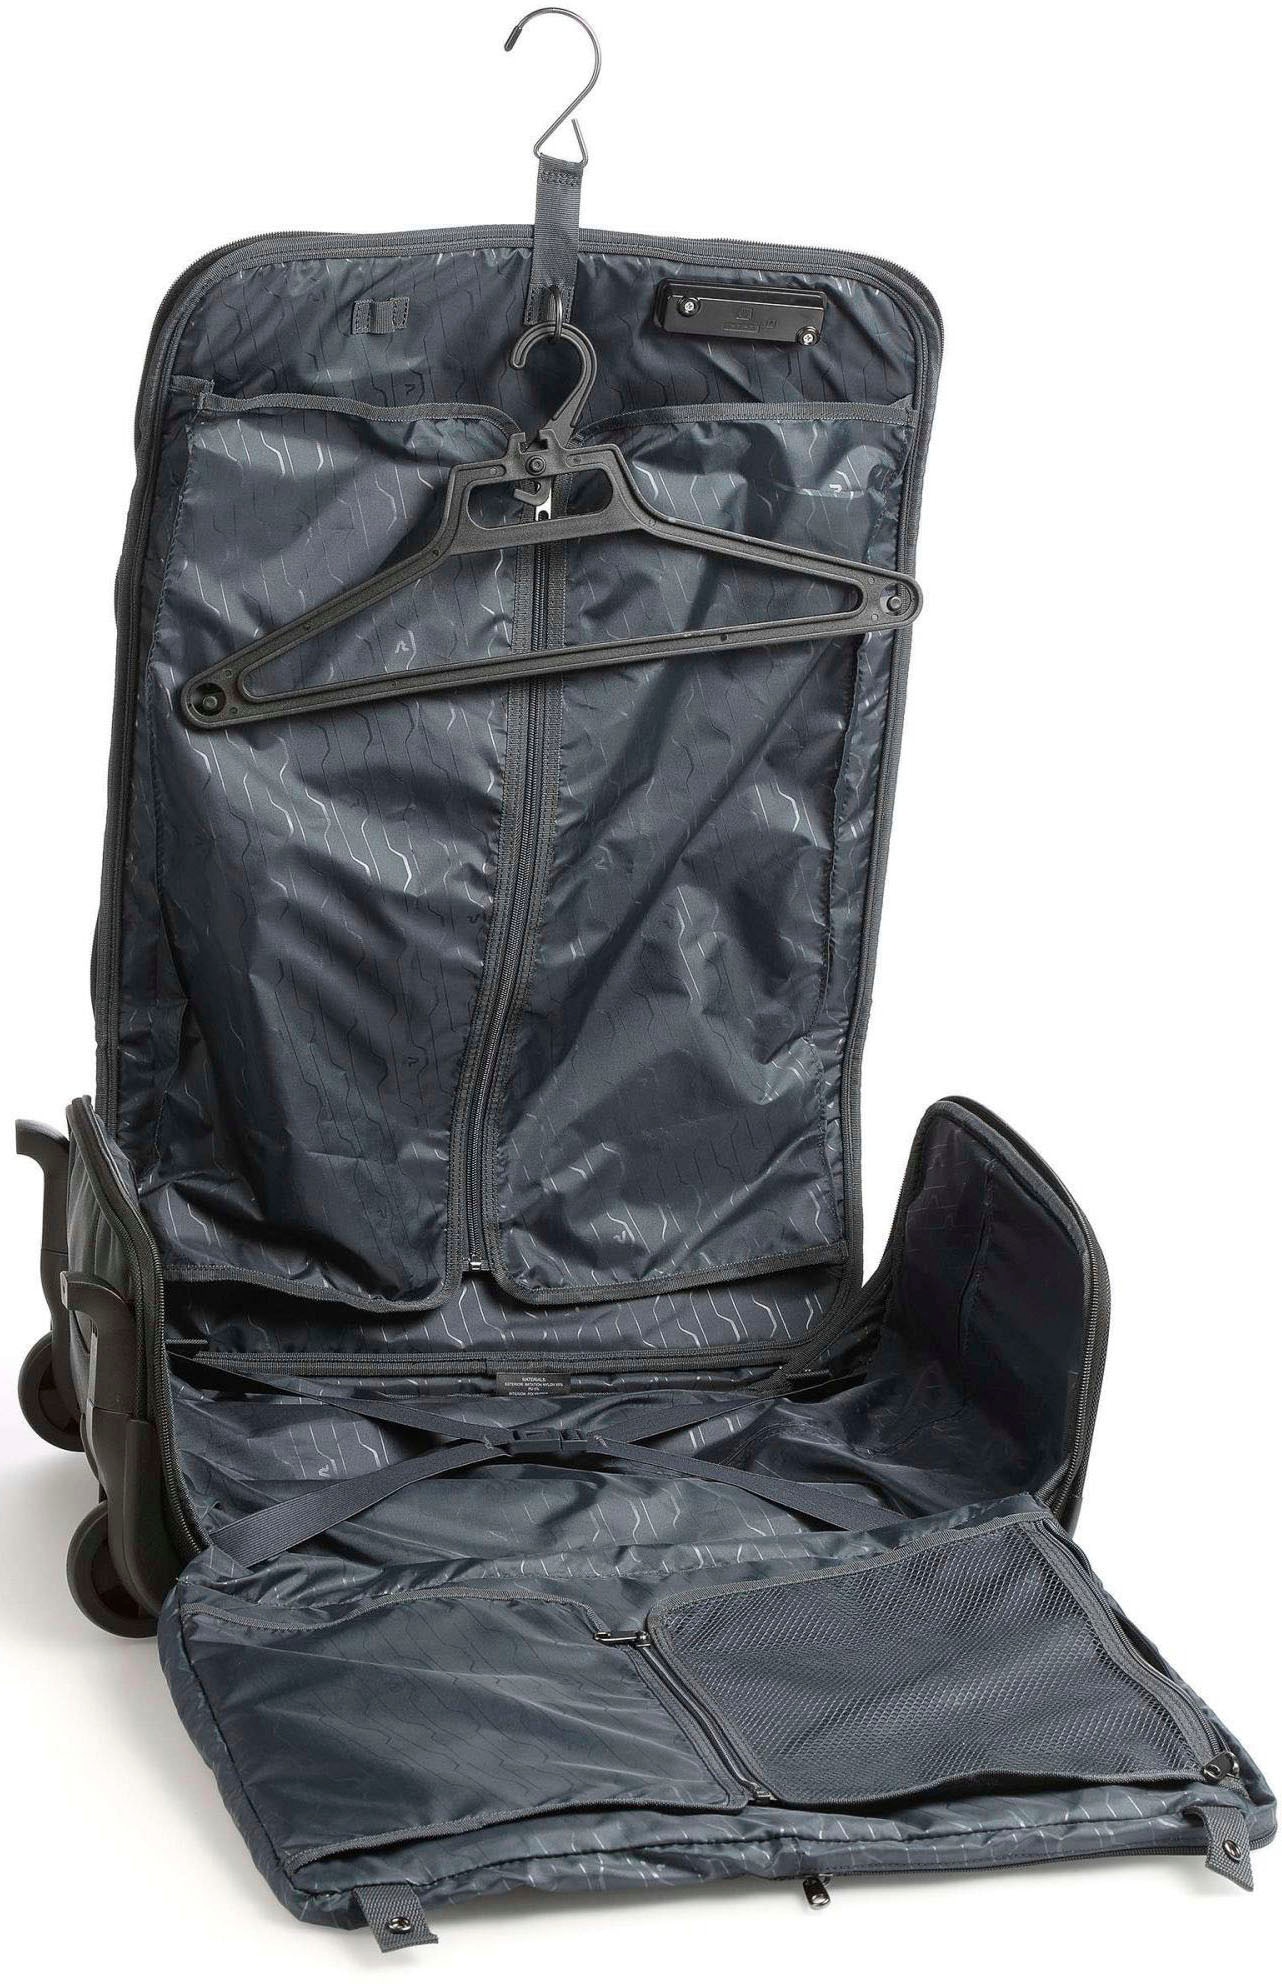 RONCATO Kleidersack »BIZ 4.0 Kabinentrolley-Kleidersack auf Rollen, schwarz«, Handgepäck-Koffer Reisegepäck mit Kleiderbügel und TSA Schloss